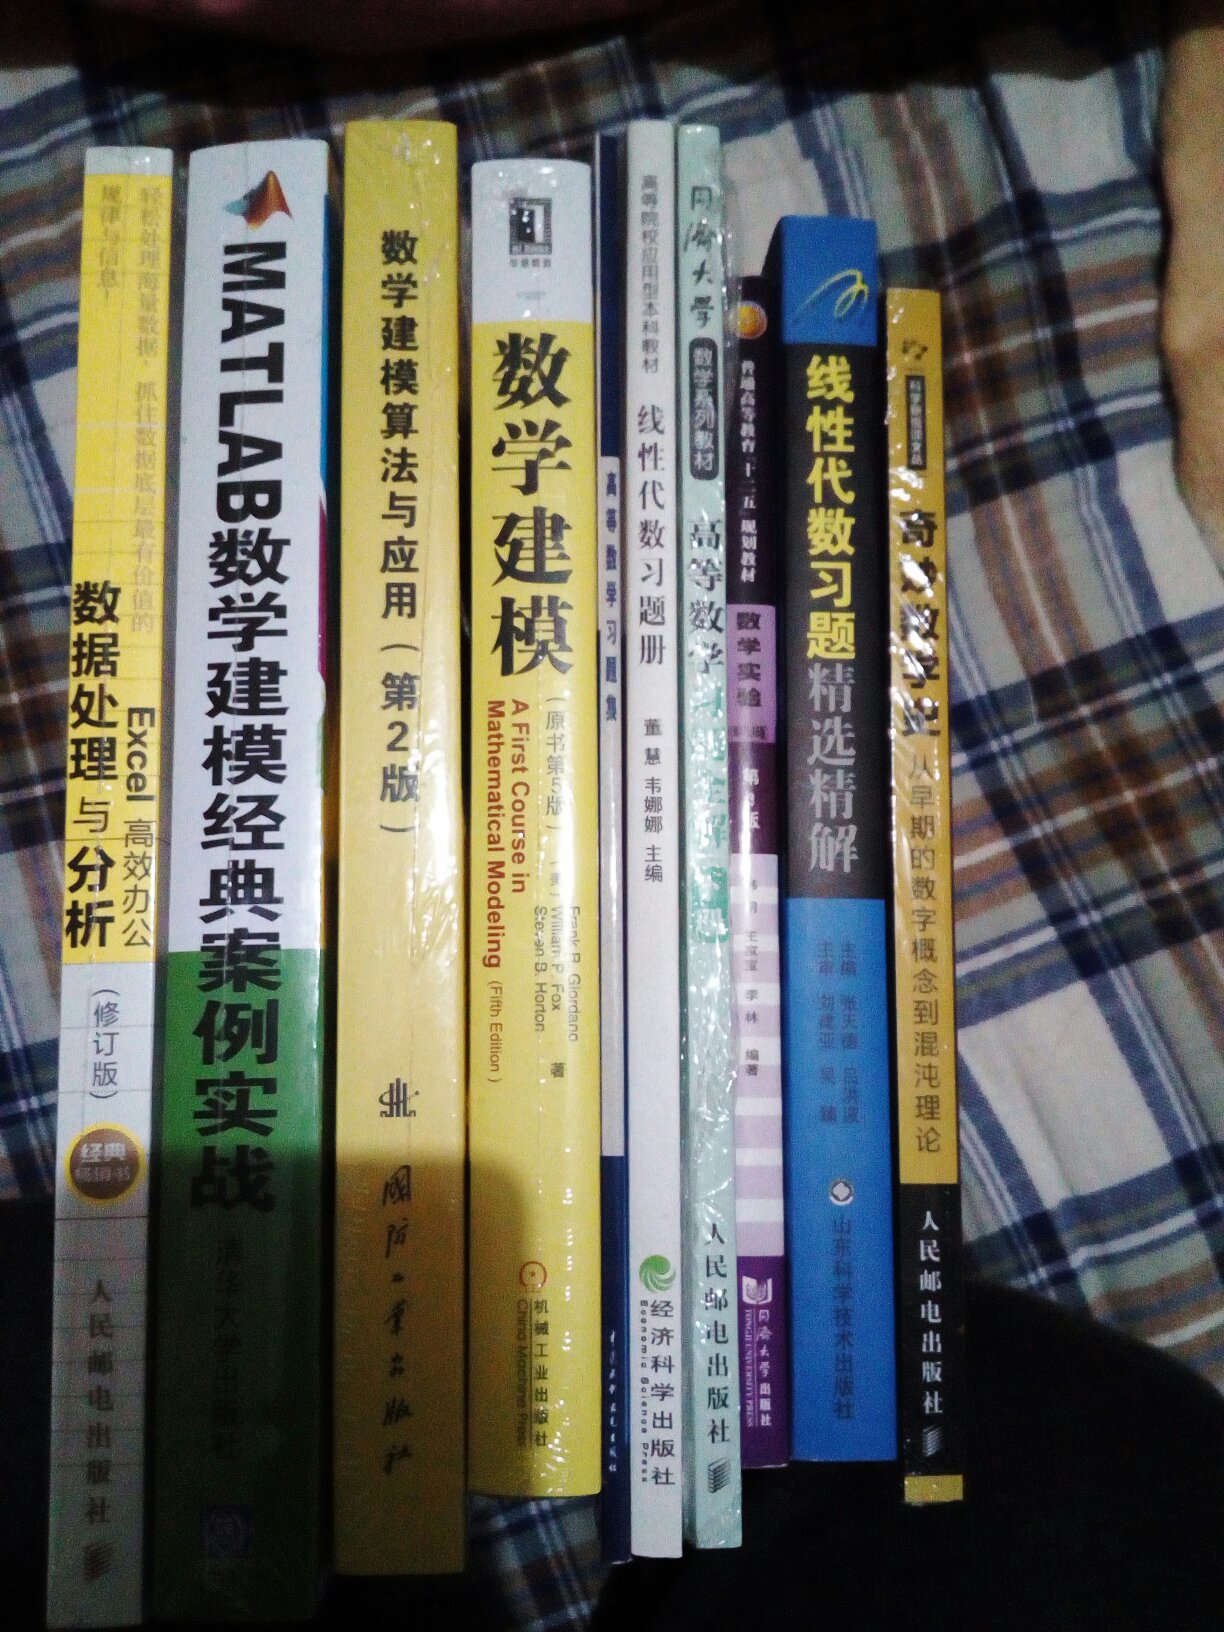 买了很多书！！！学习！！！！